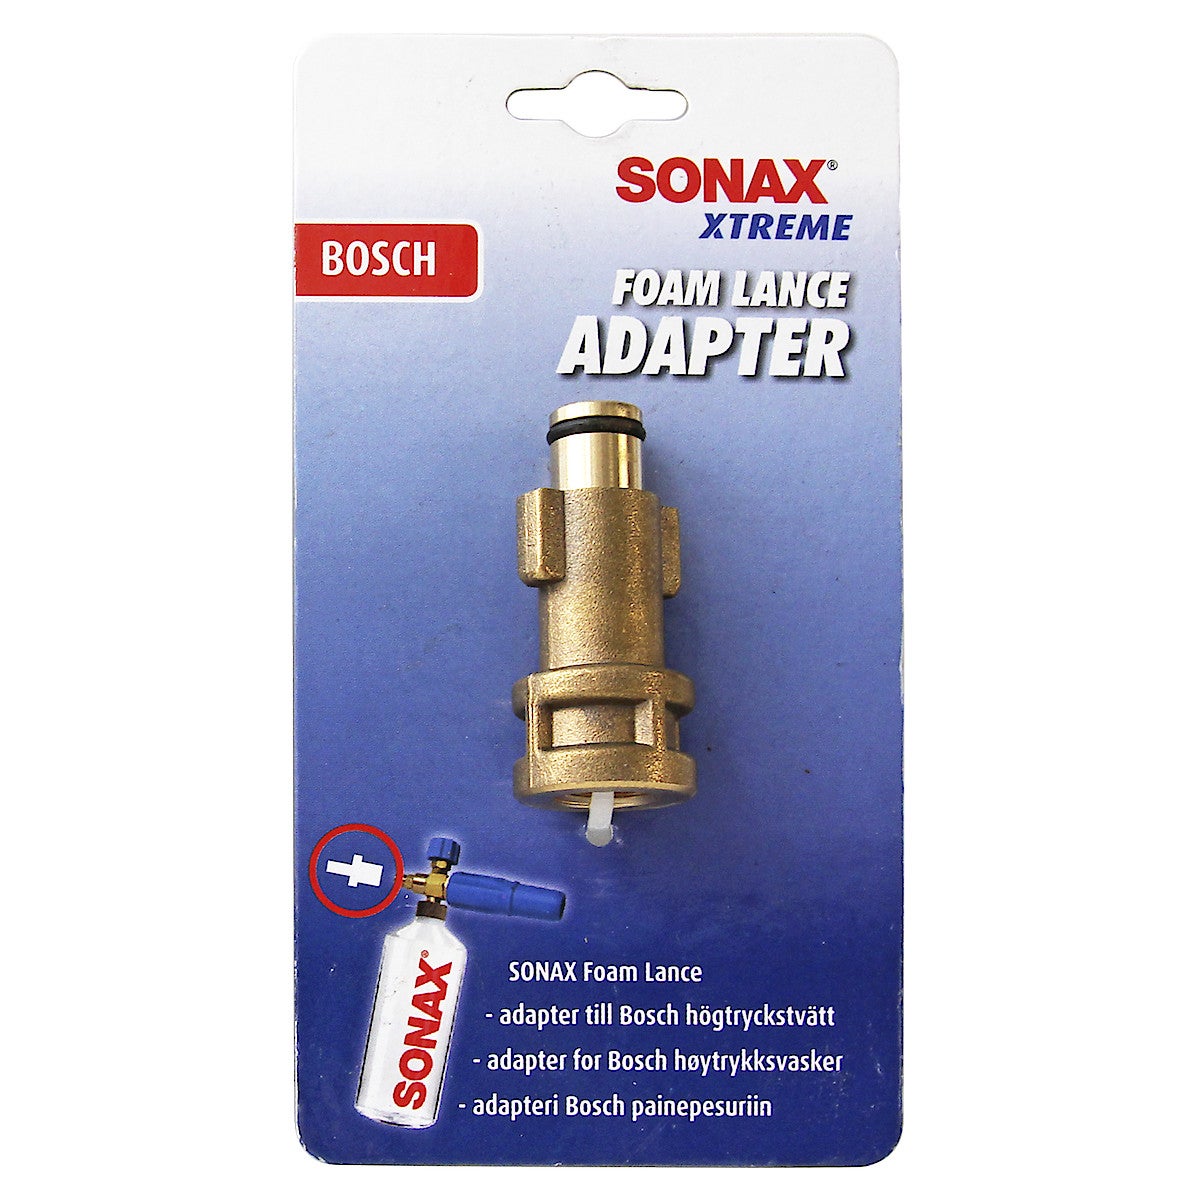 Sonax Foam Lance Adapter till Bosch högtryckstvätt